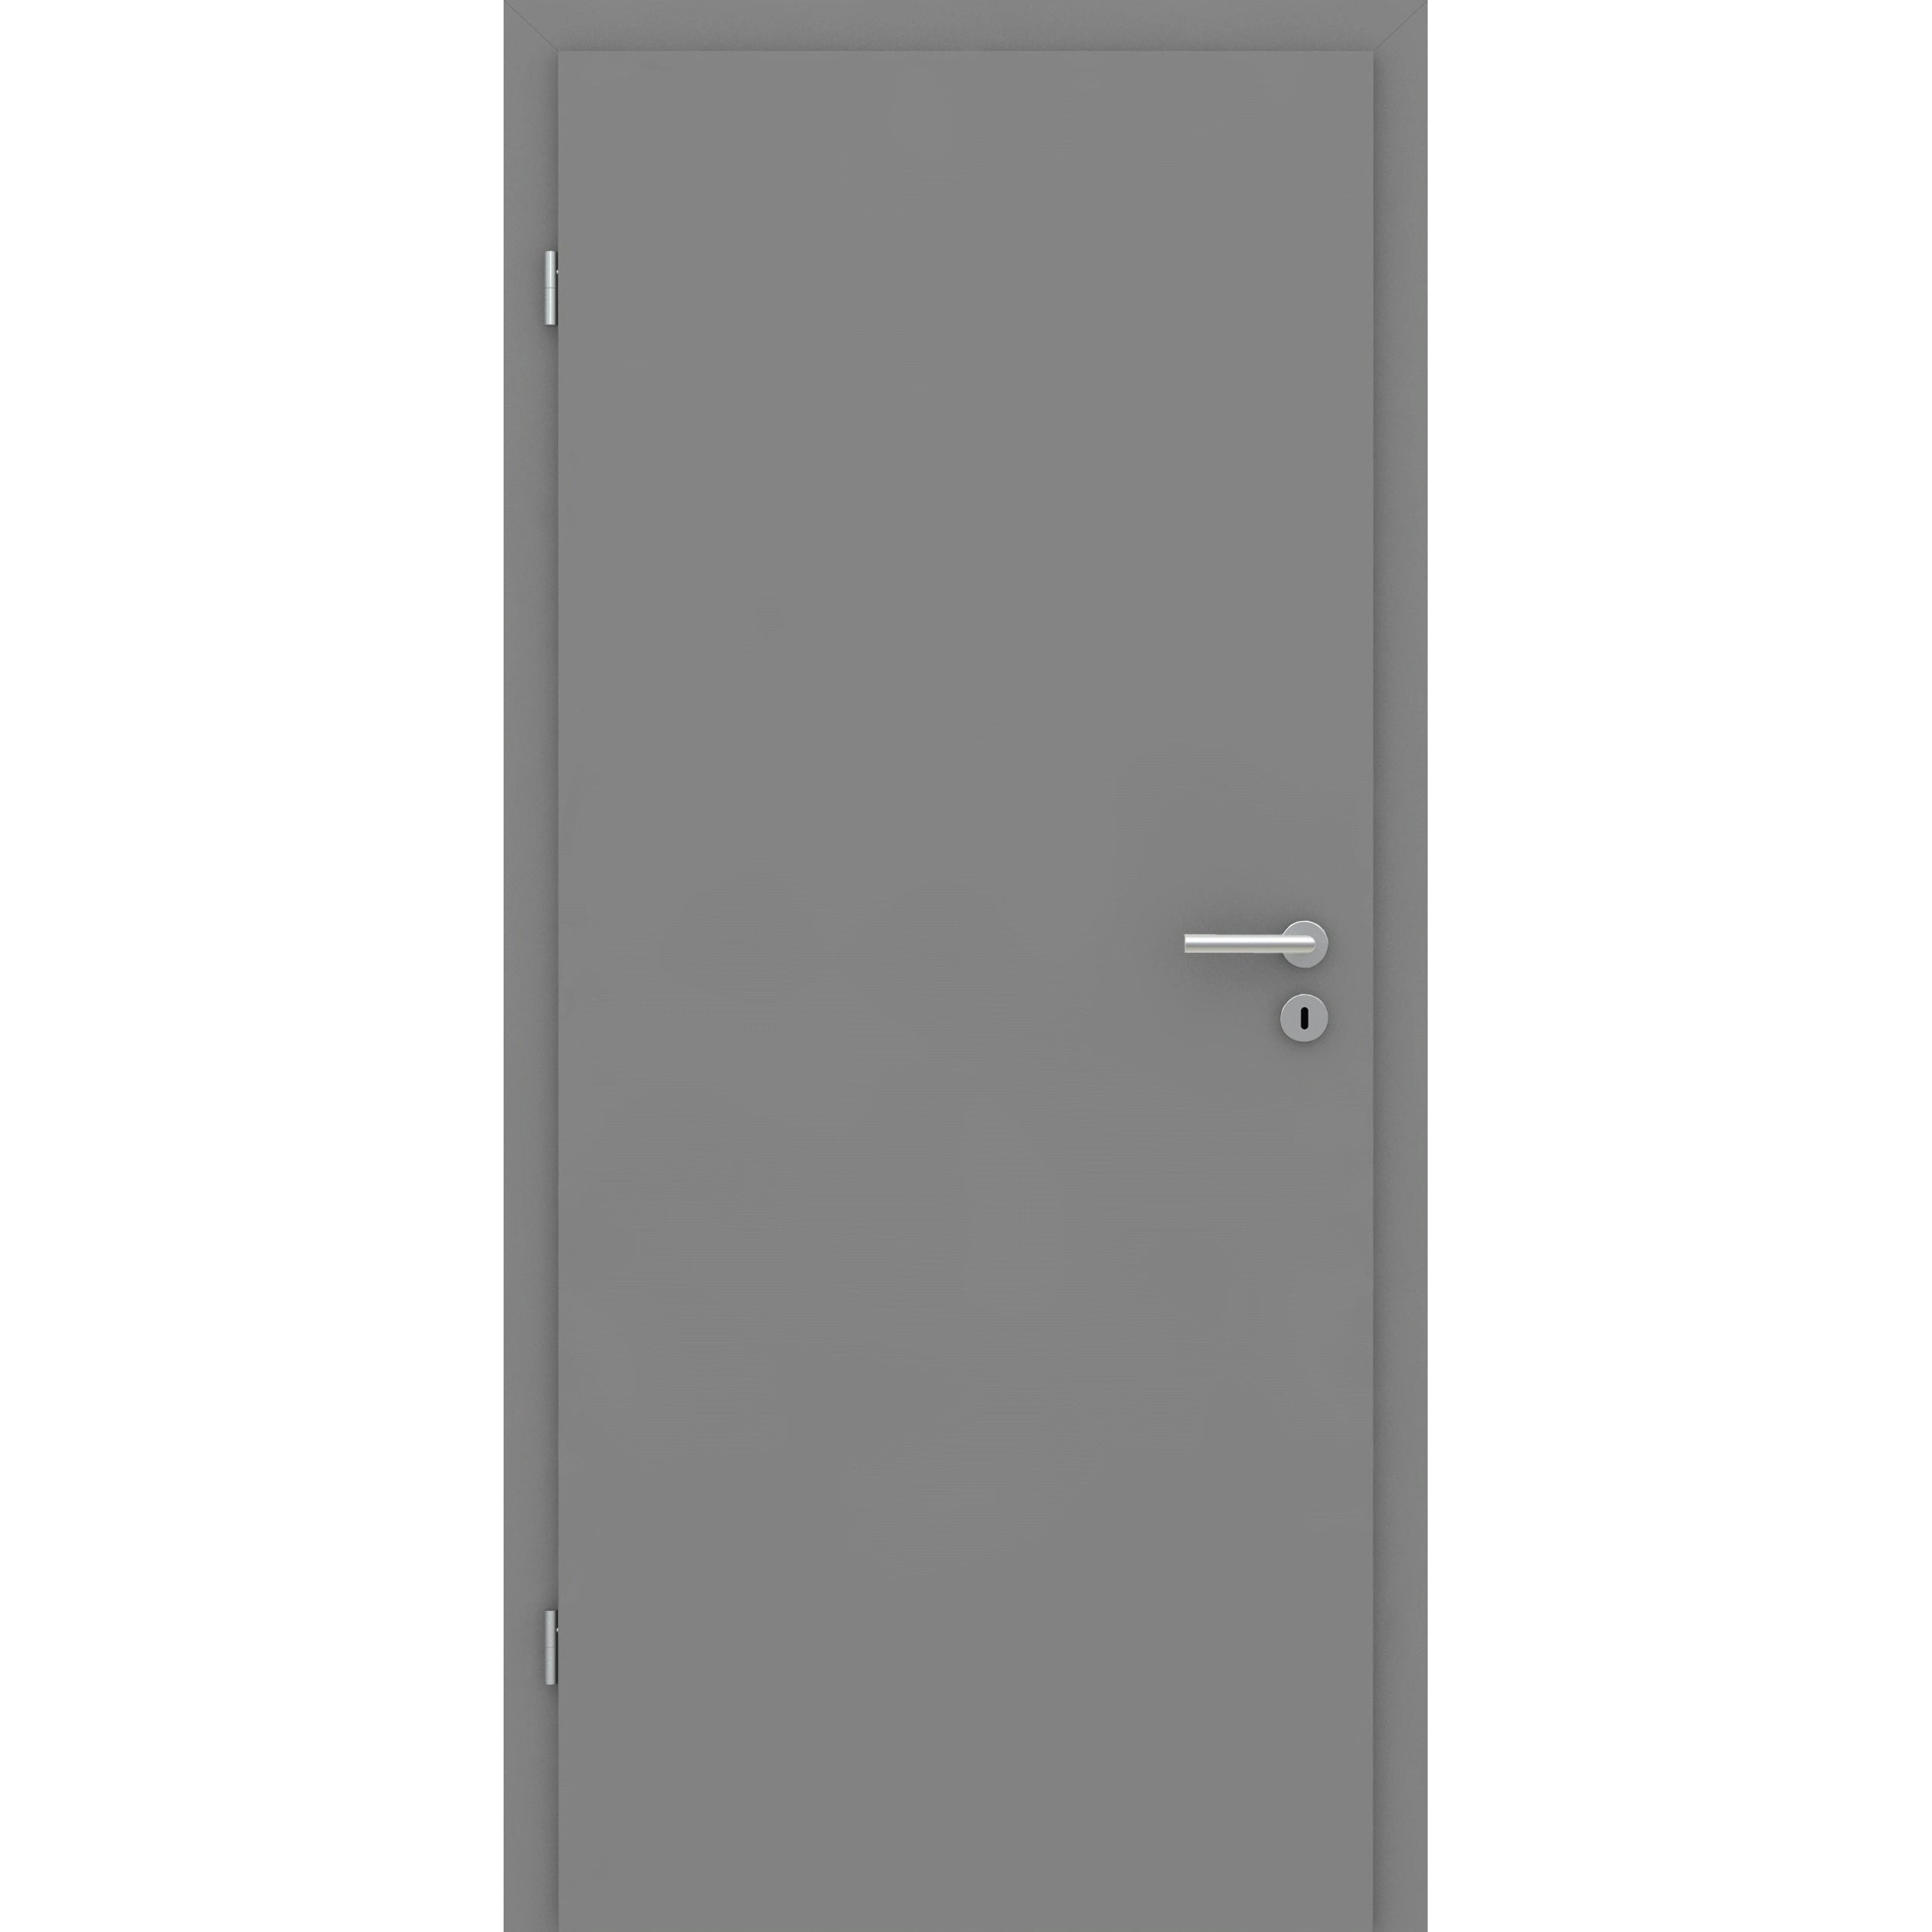 Wohnungseingangstür mit Zarge grau glatt Designkante SK2 / KK3